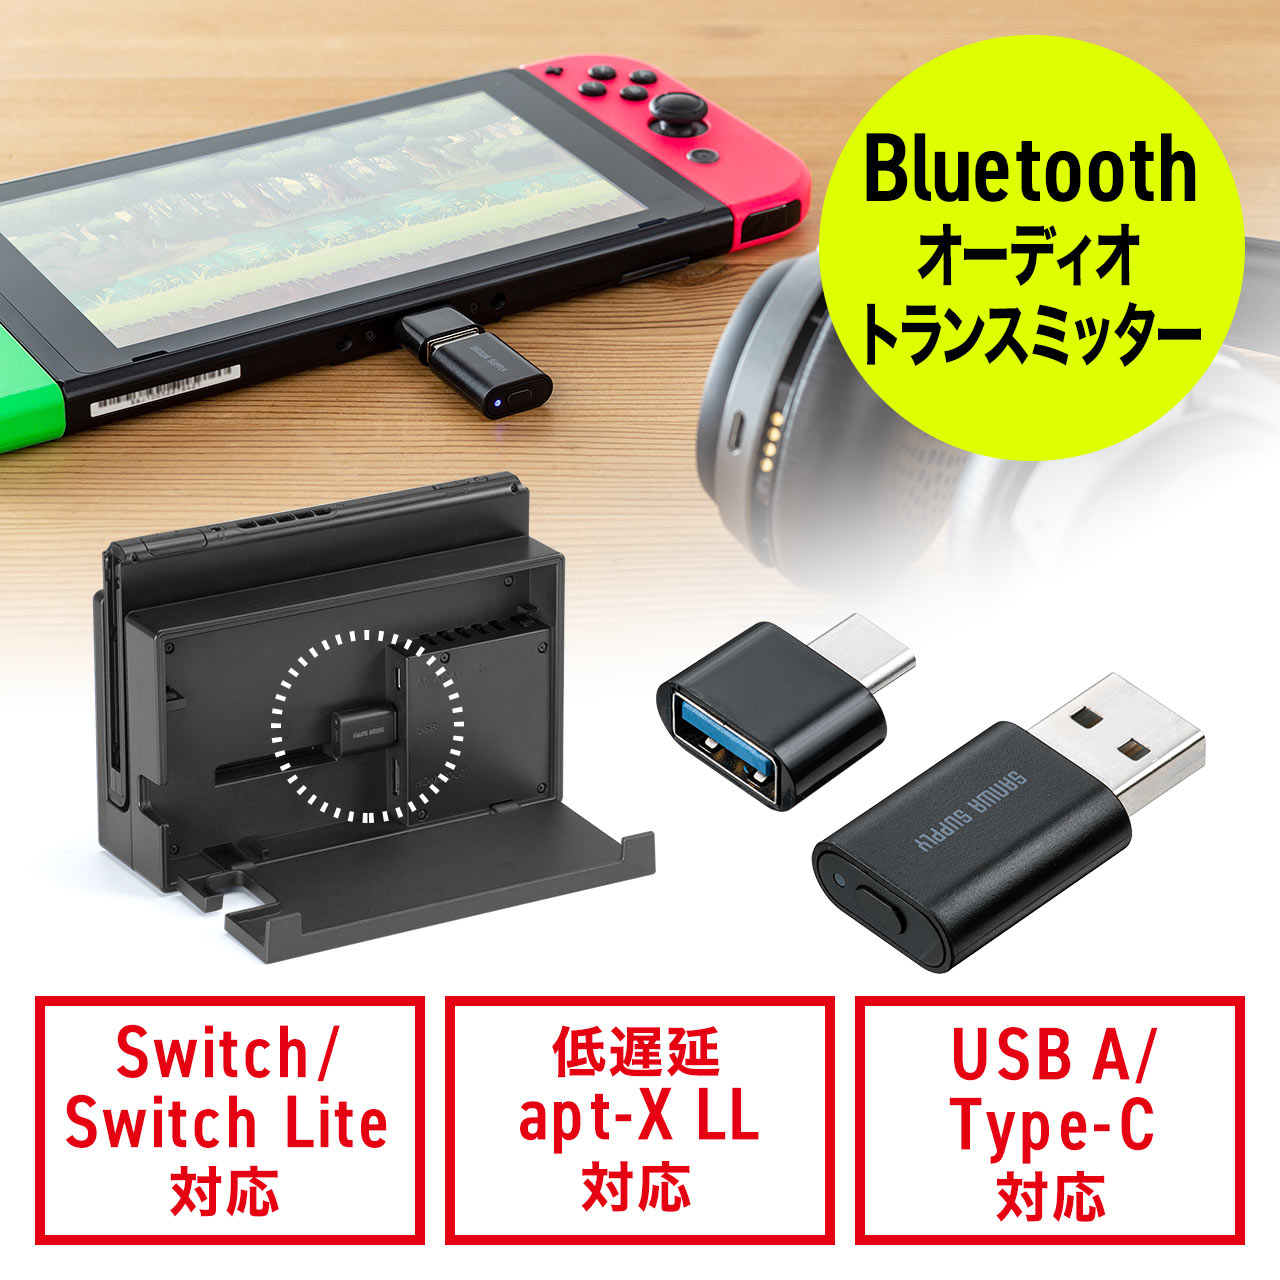 Bluetooth オーディオトランスミッター Nintendo Switch Lite 有機el Ps4 Ps5 対応 Usb Type C変換アダプタ付き 低遅延 Apt X Ll ワイヤレス送信機 400 Btad009の販売商品 通販ならサンワダイレクト